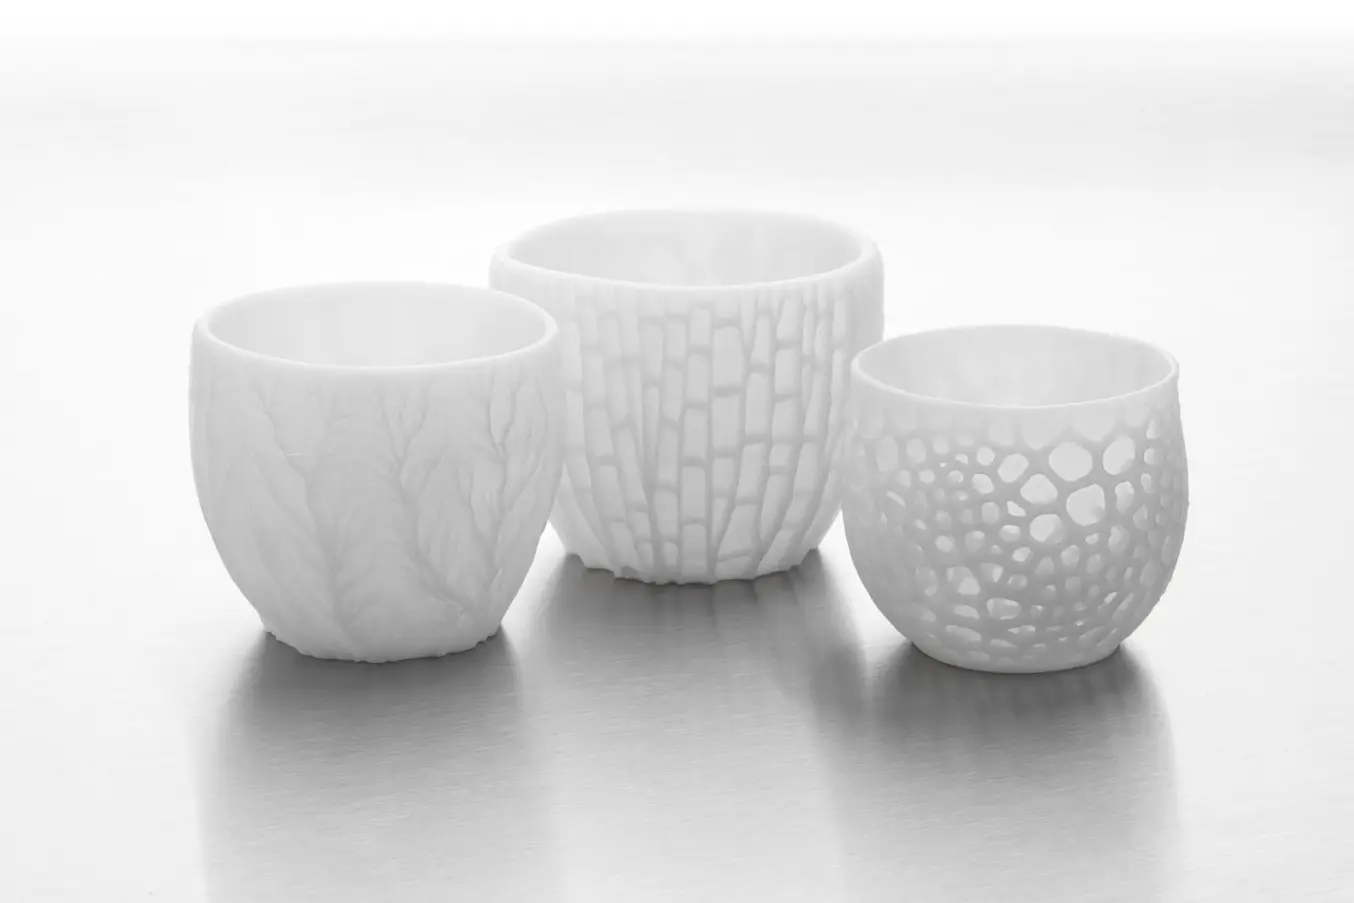 Lebensmittelechte 3D-gedruckte Keramikteile